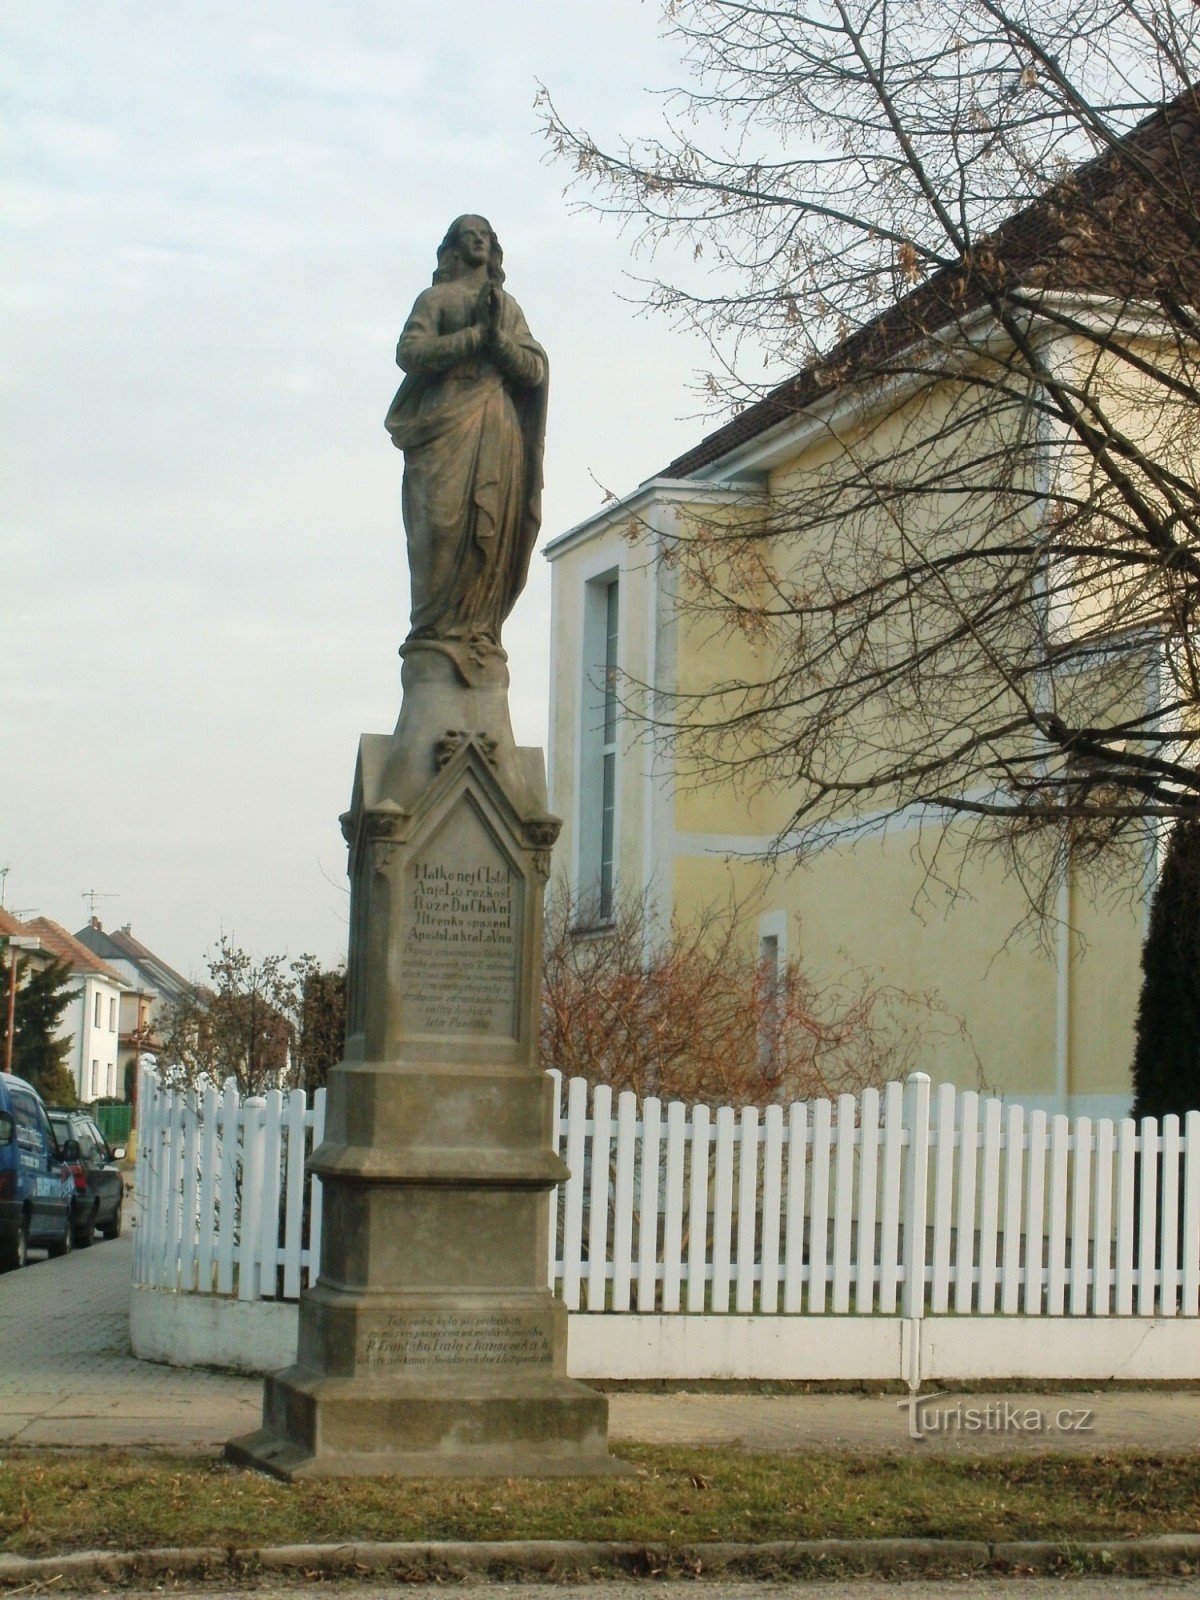 Nový Bydžov - ett monument med en staty av St. Jungfru Maria